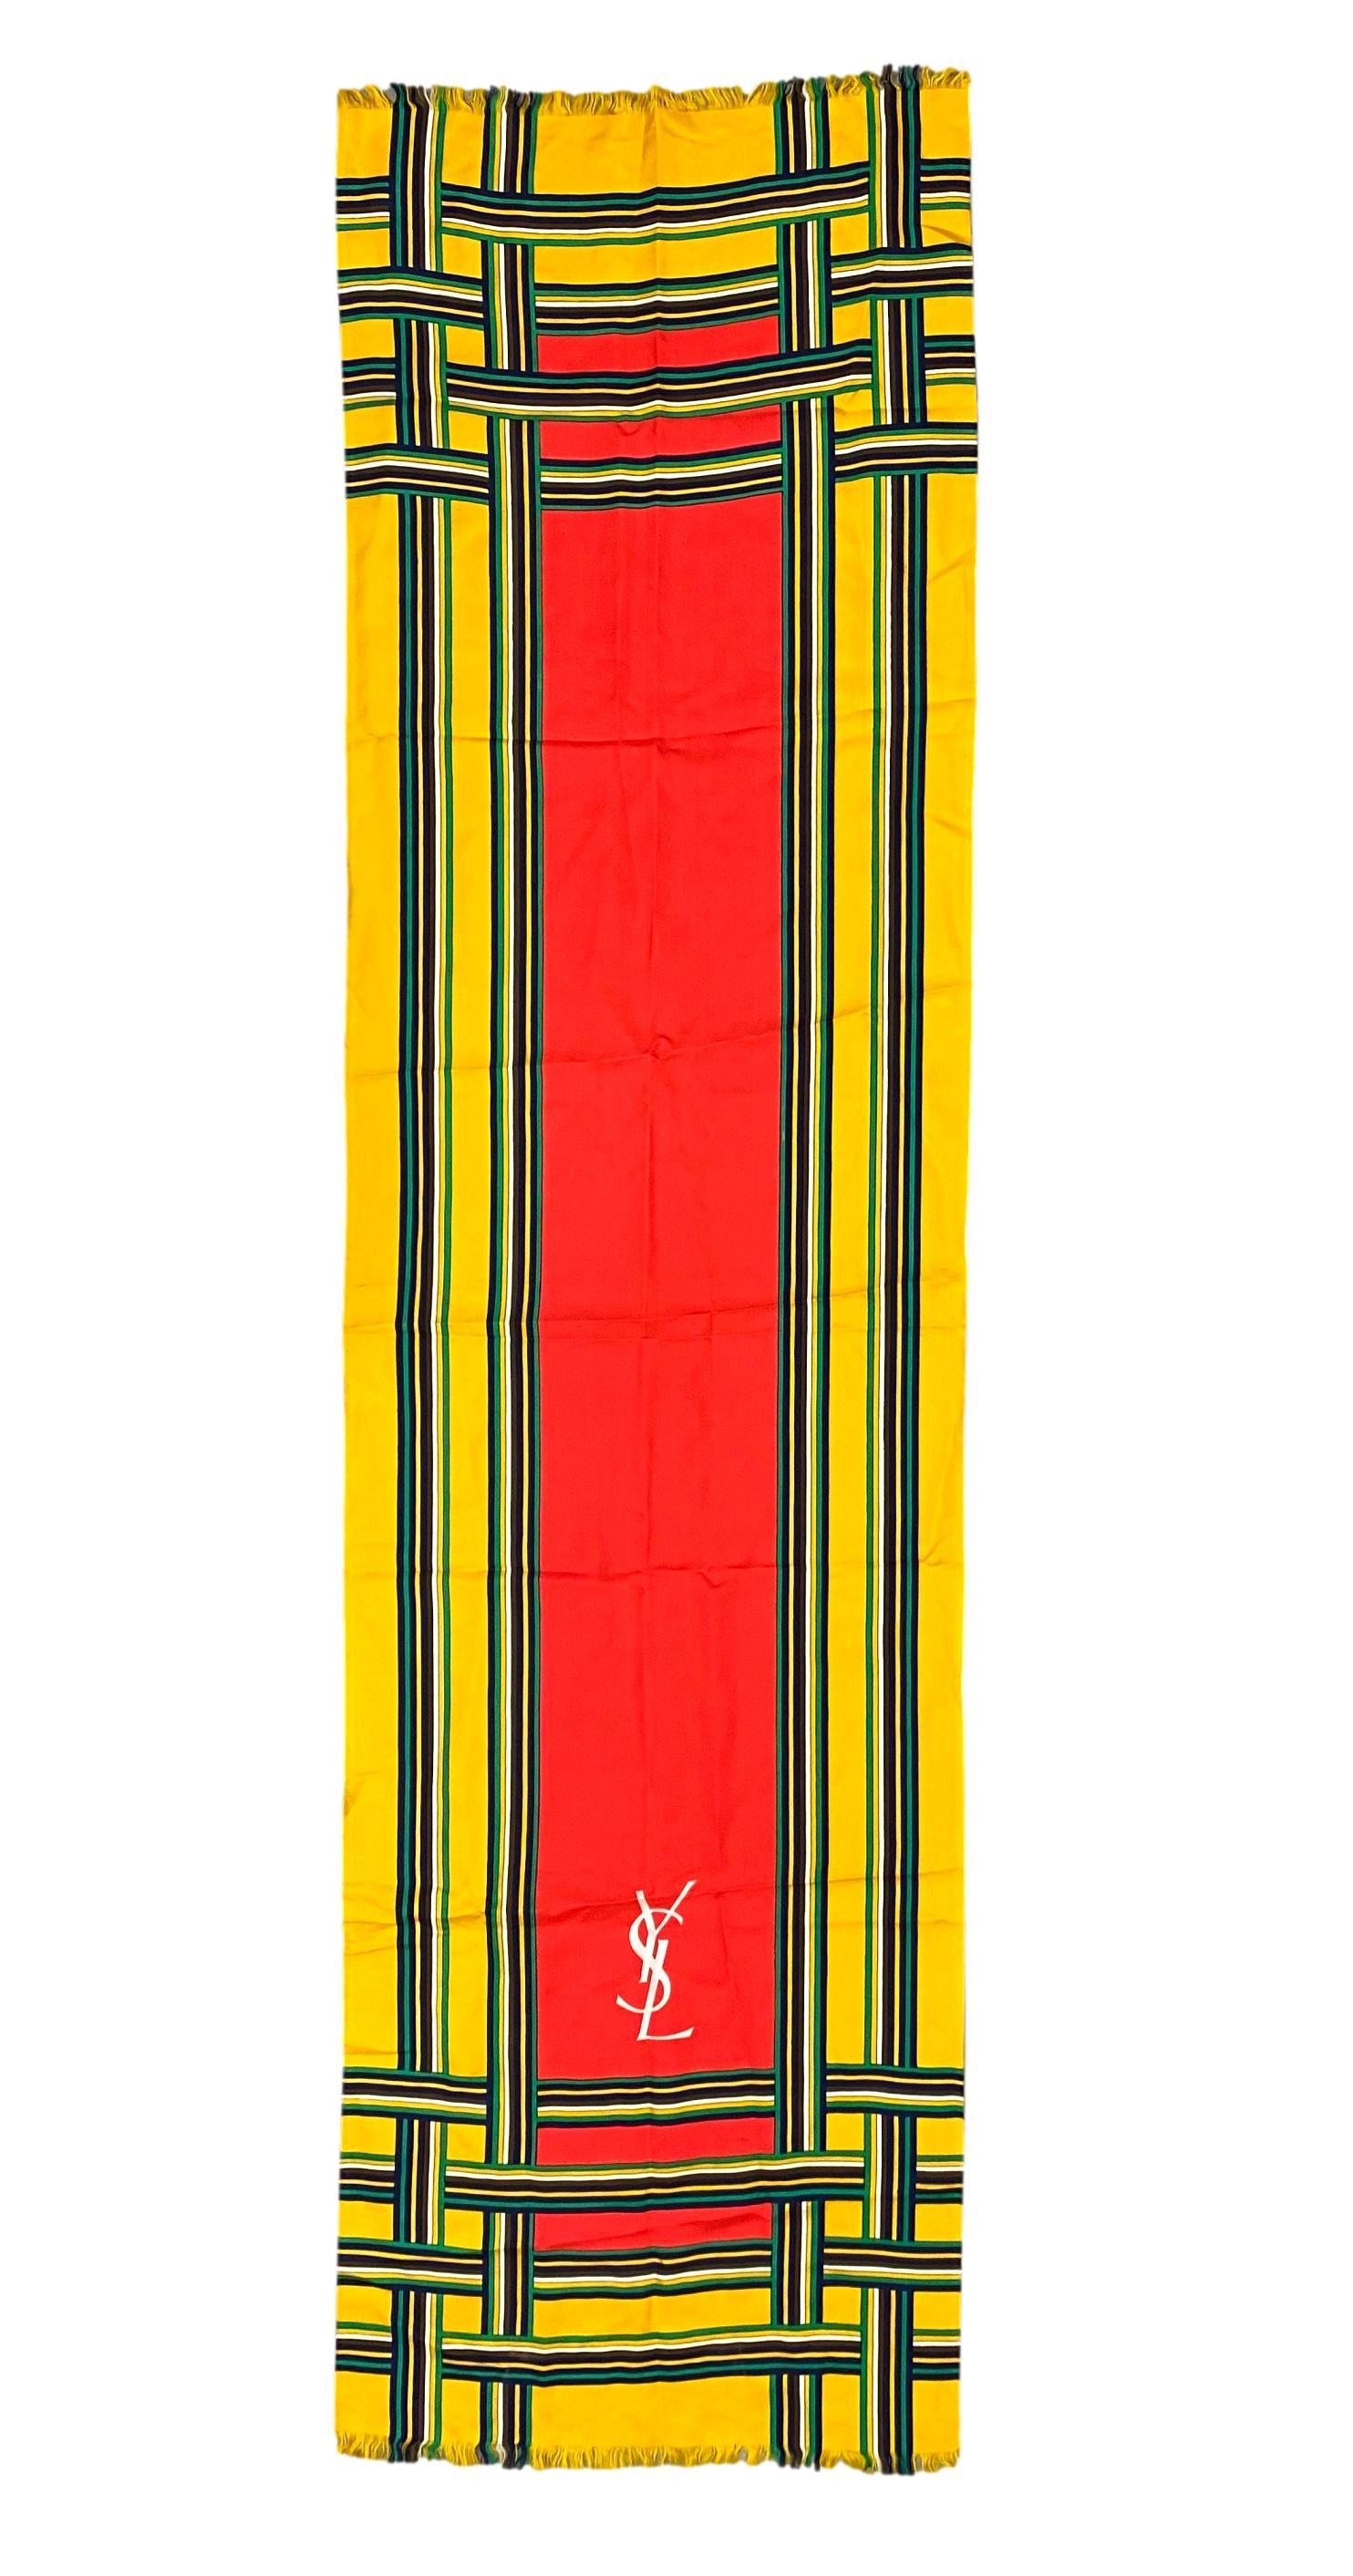 Echarpe longue en soie à carreaux multicolores Yves Saint Laurent, circa 1970 - 1975. Cette belle et classique écharpe à motif hachuré d'Yves Saint Laurent se présente dans une belle coloration jaune et rouge vif. Au début des années 1960, Yves